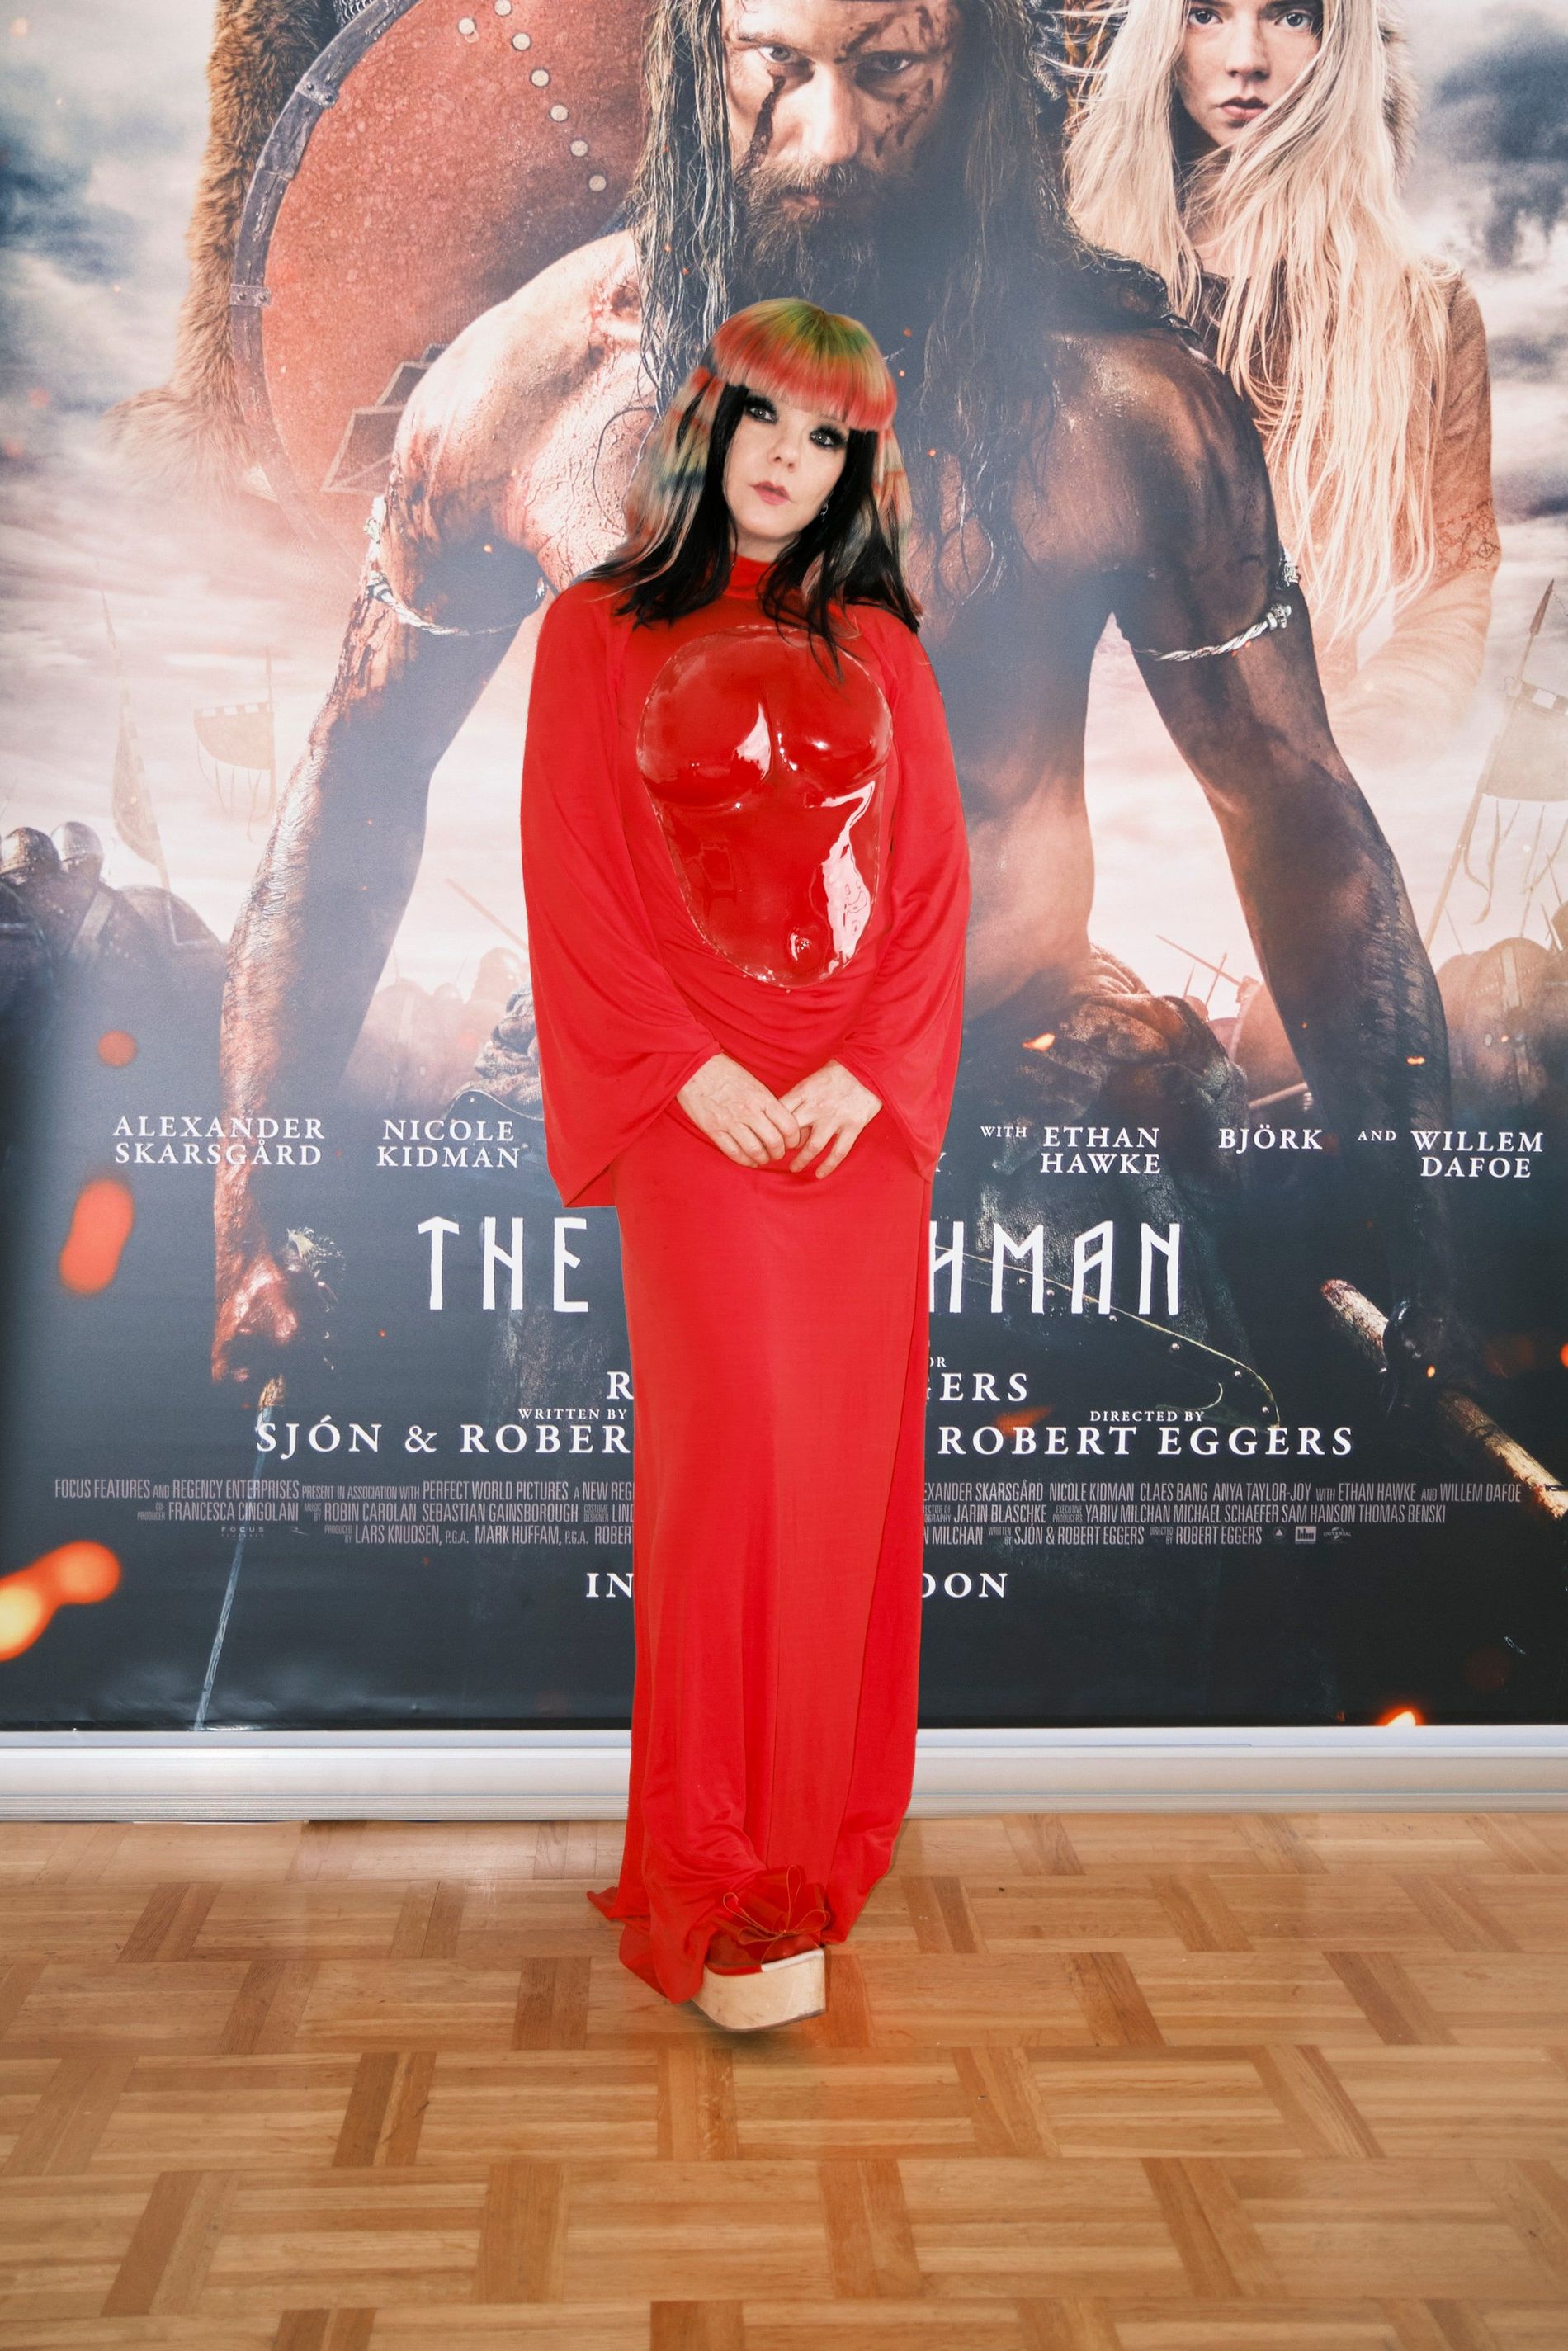 Björk at the Northman premiere wearing Loewe